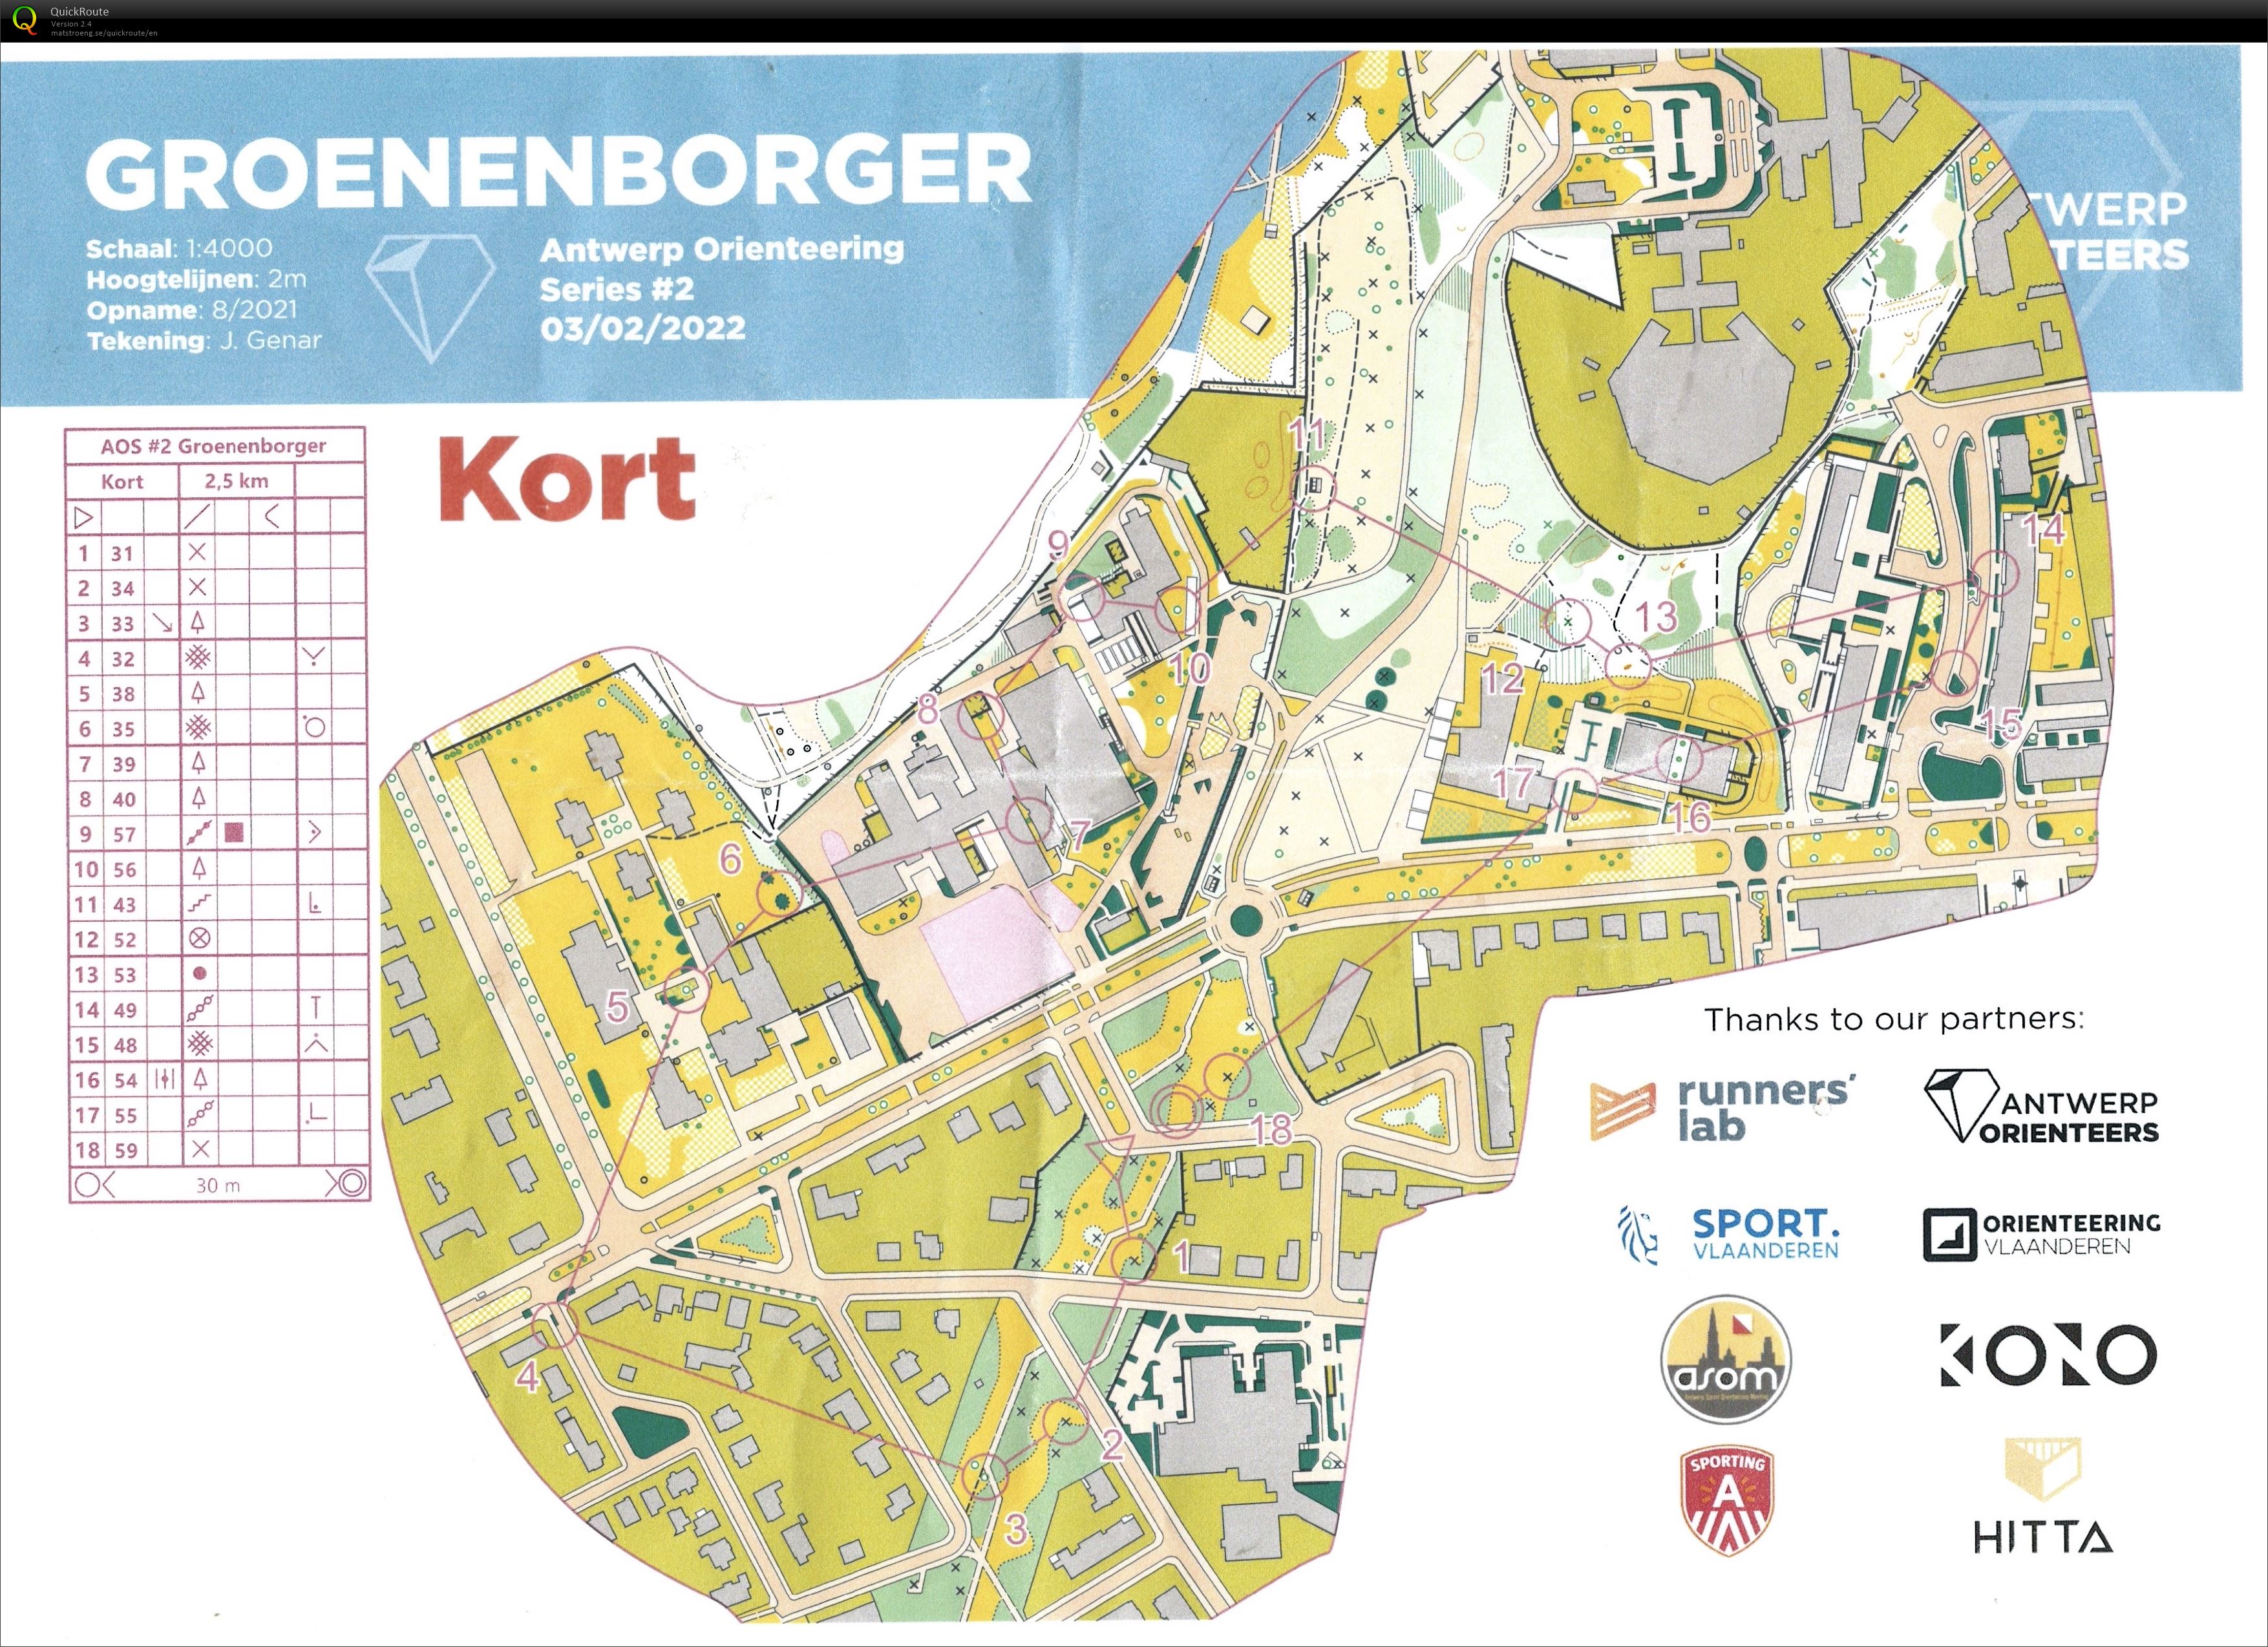 Antwerp Orienteering Series - Groenenborger - Kort (03/02/2022)